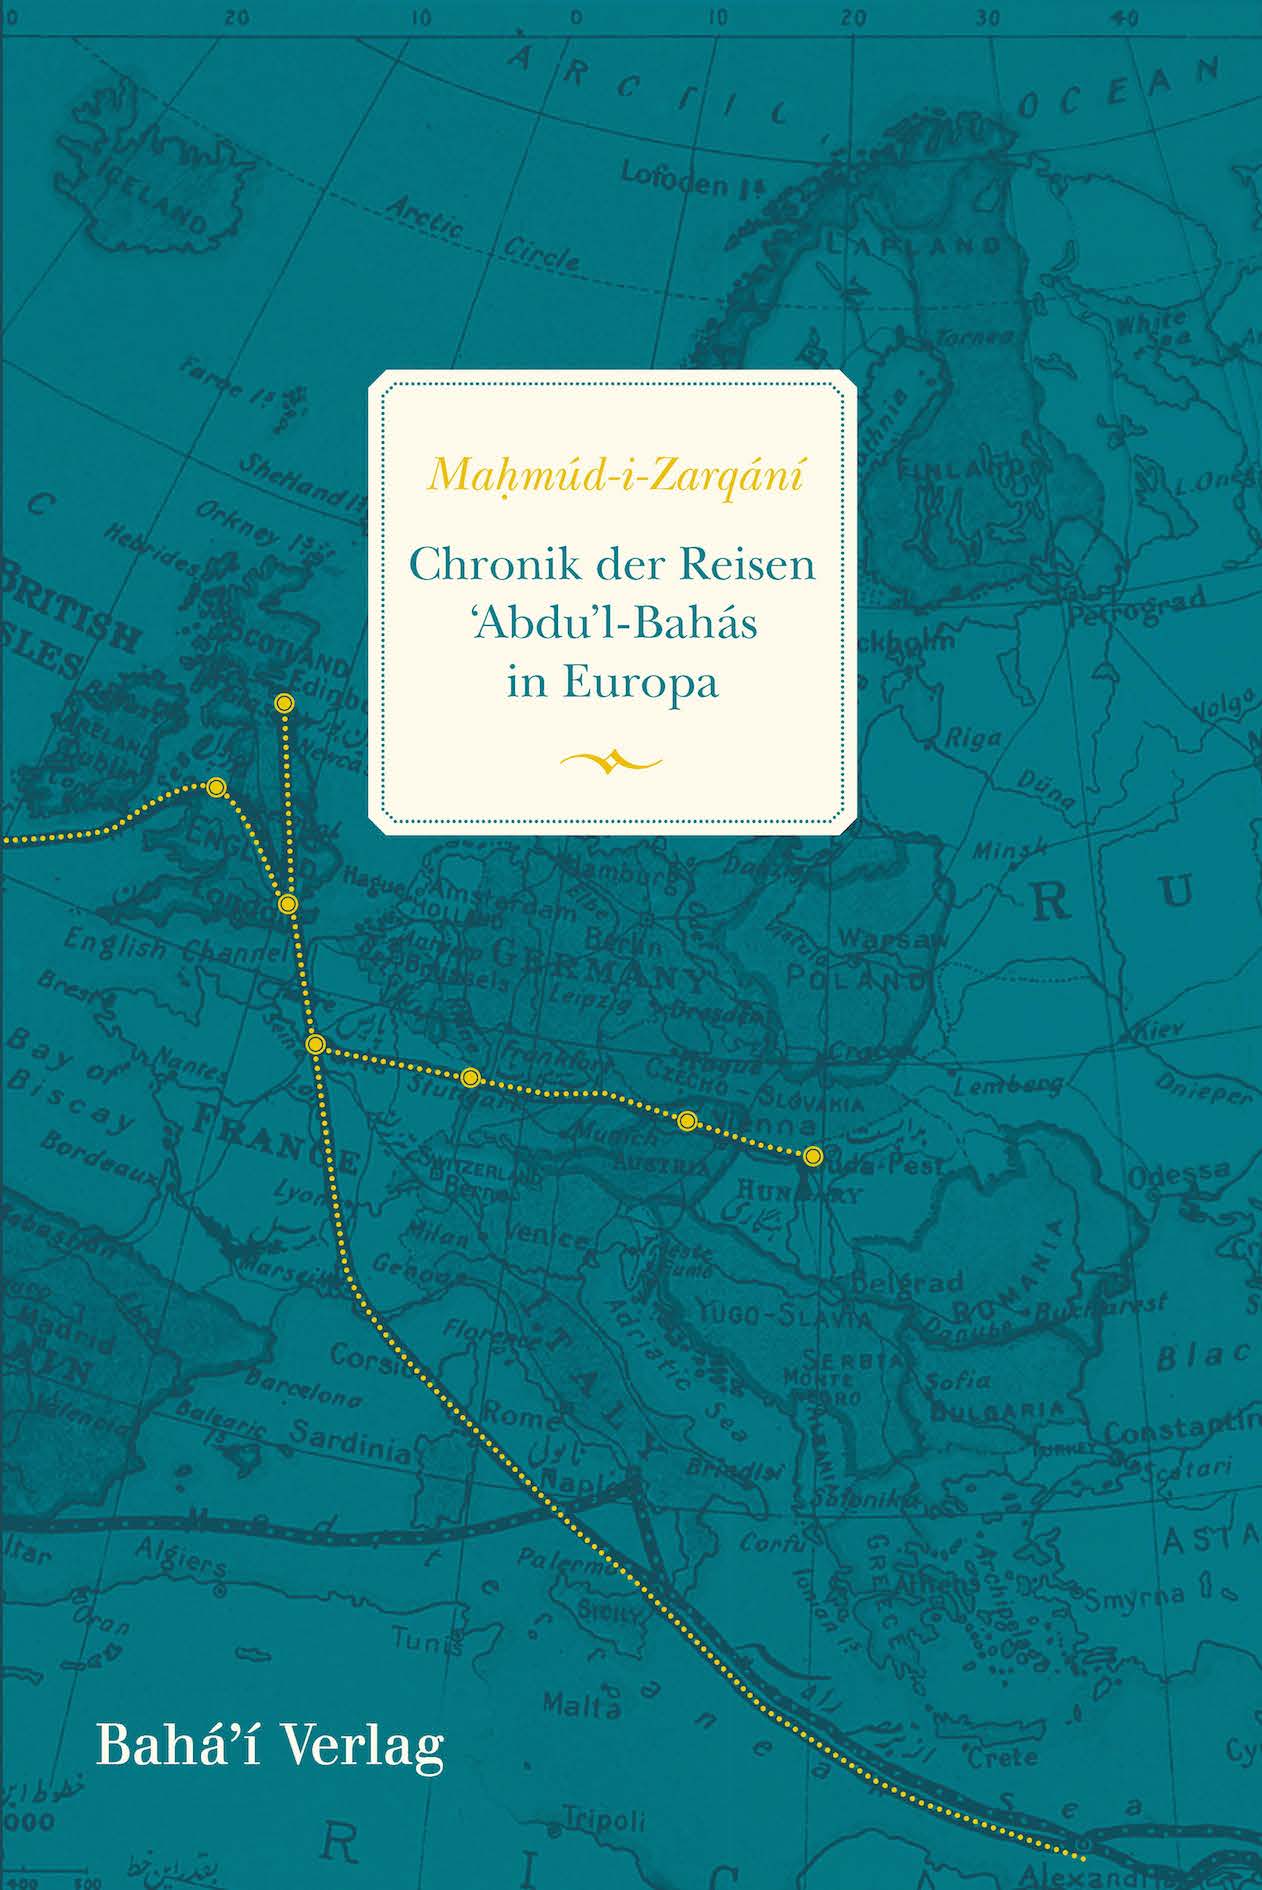 Chronik der Reisen 'Abdu'l-Bahás in Europa